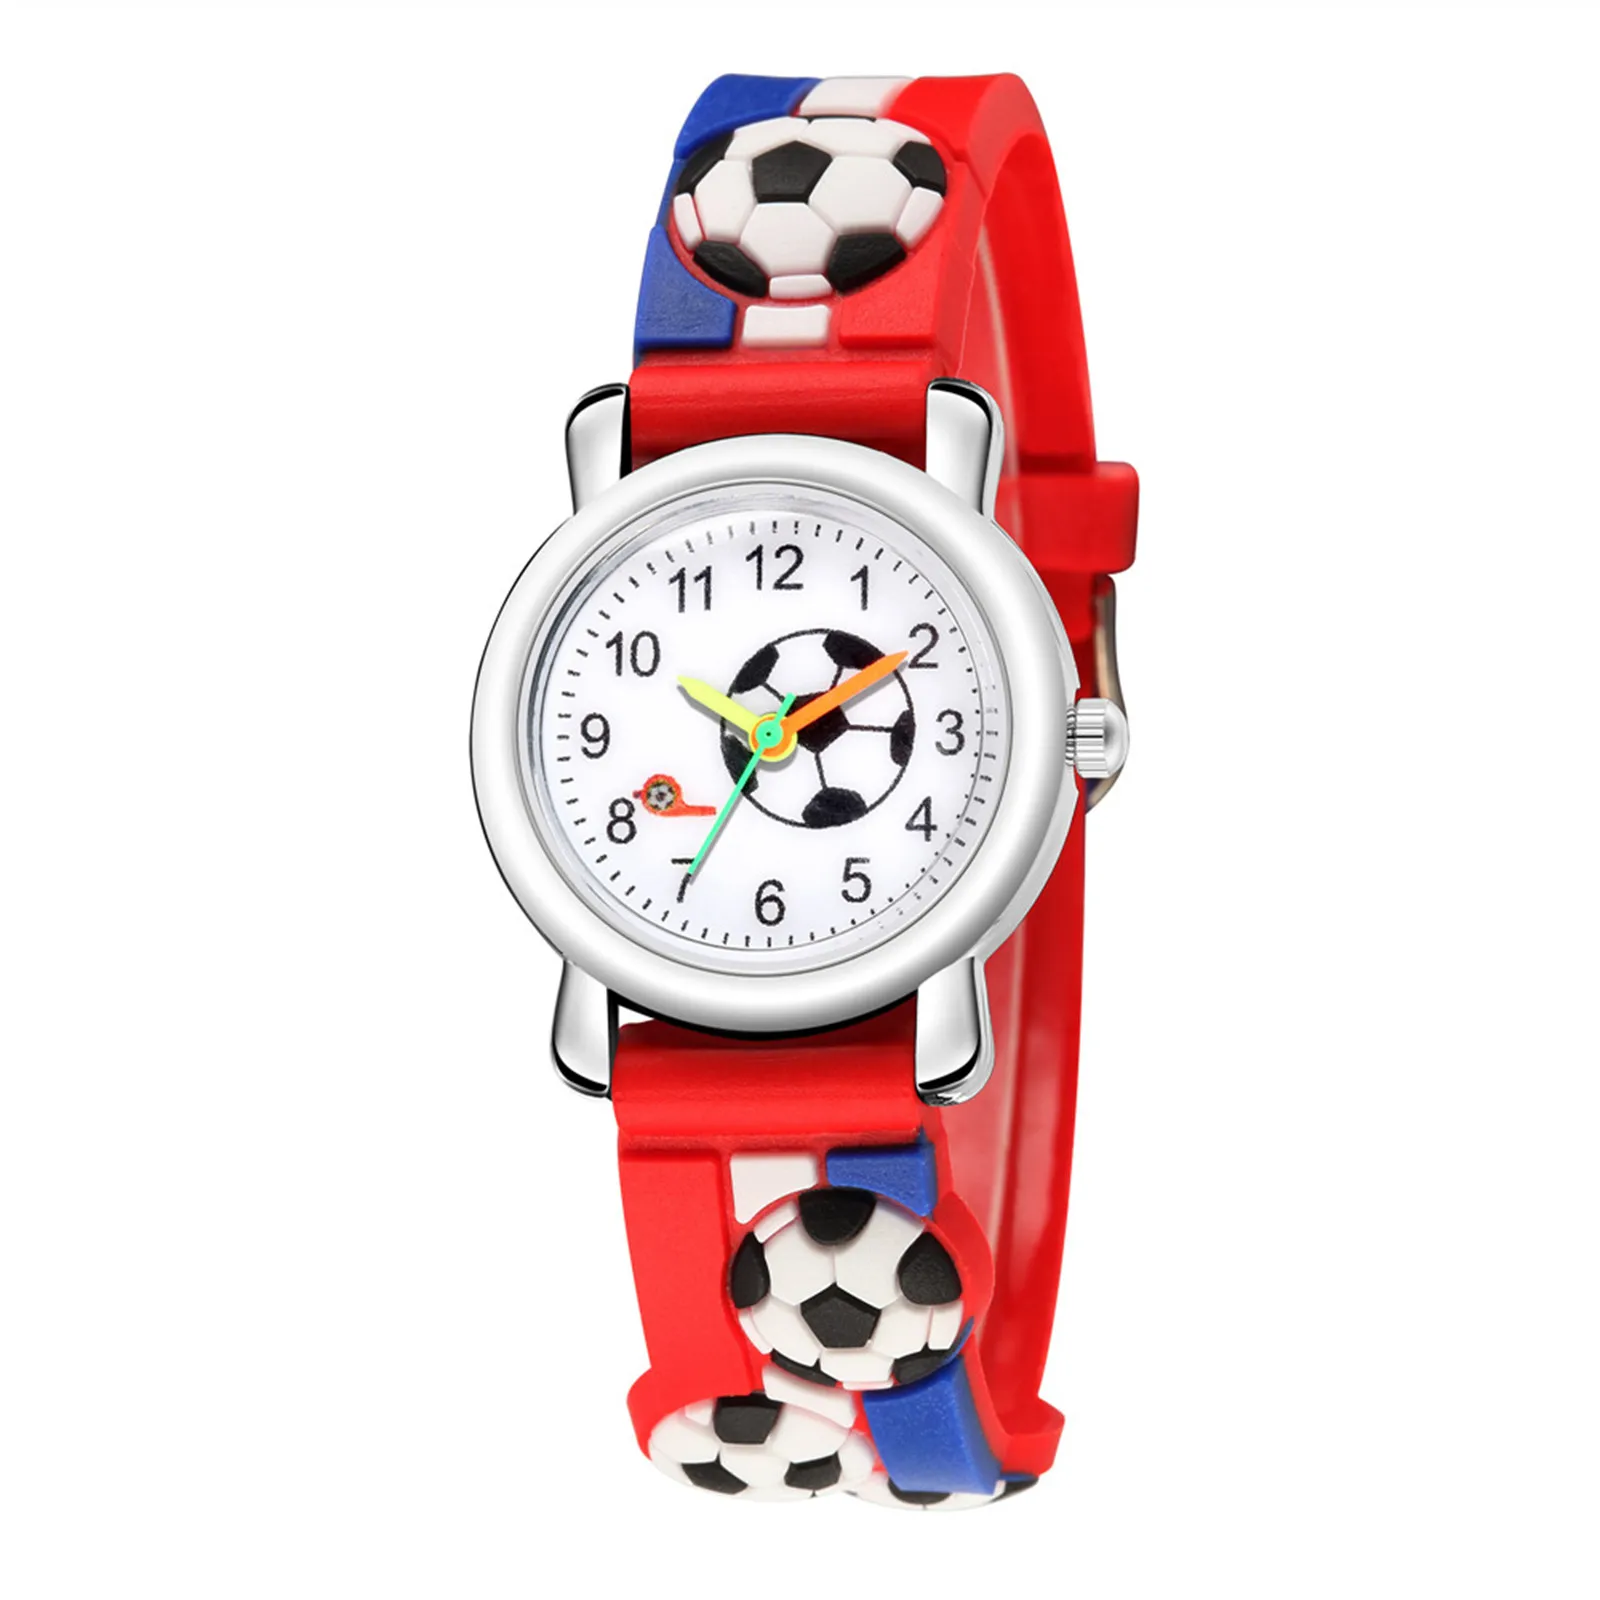 Рельефные часы с рисунком футбольного мяча Детские трендовые 3D кварцевые спортивные модные детские часы для детей с вызовом